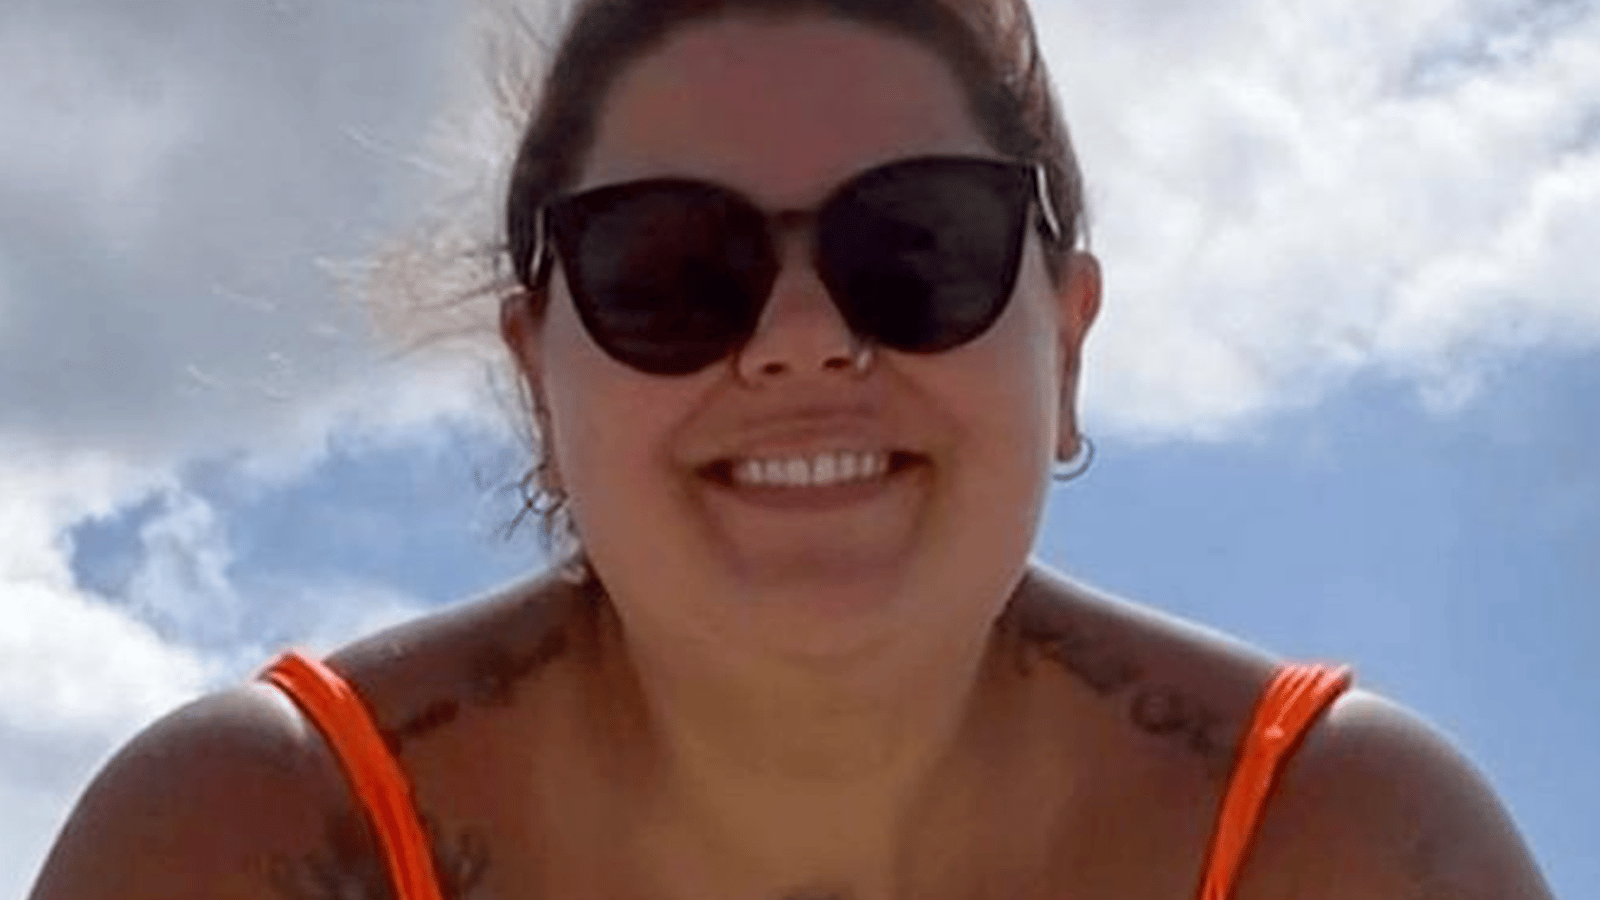 Une femme en situation de surpoids publie une vidéo en bikini et les gens la félicitent pour son courage